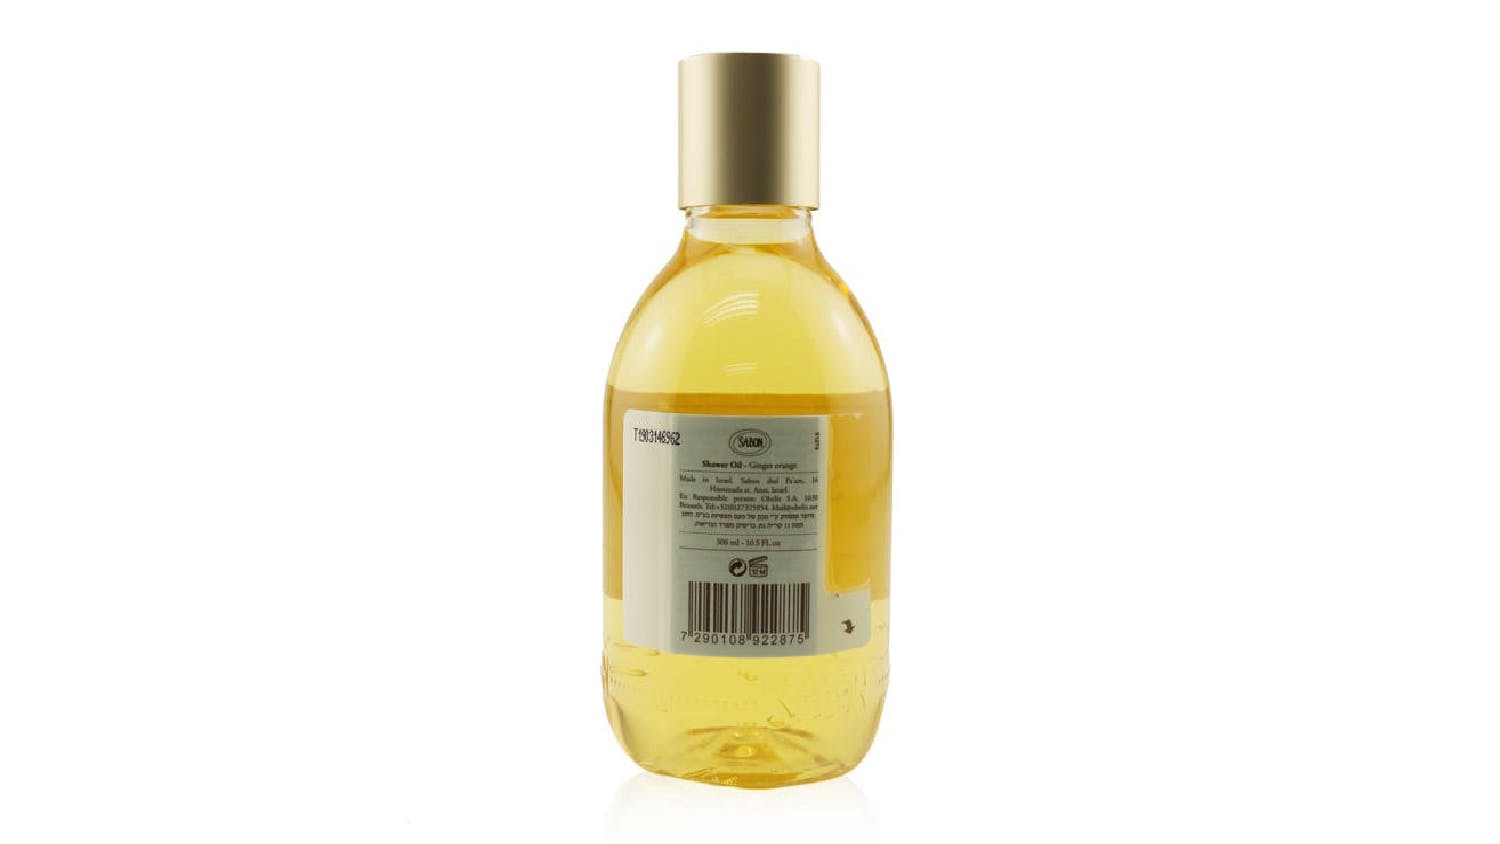 Sabon Shower Oil - Ginger Orange (Plastic Bottle) - 300ml/10.5oz